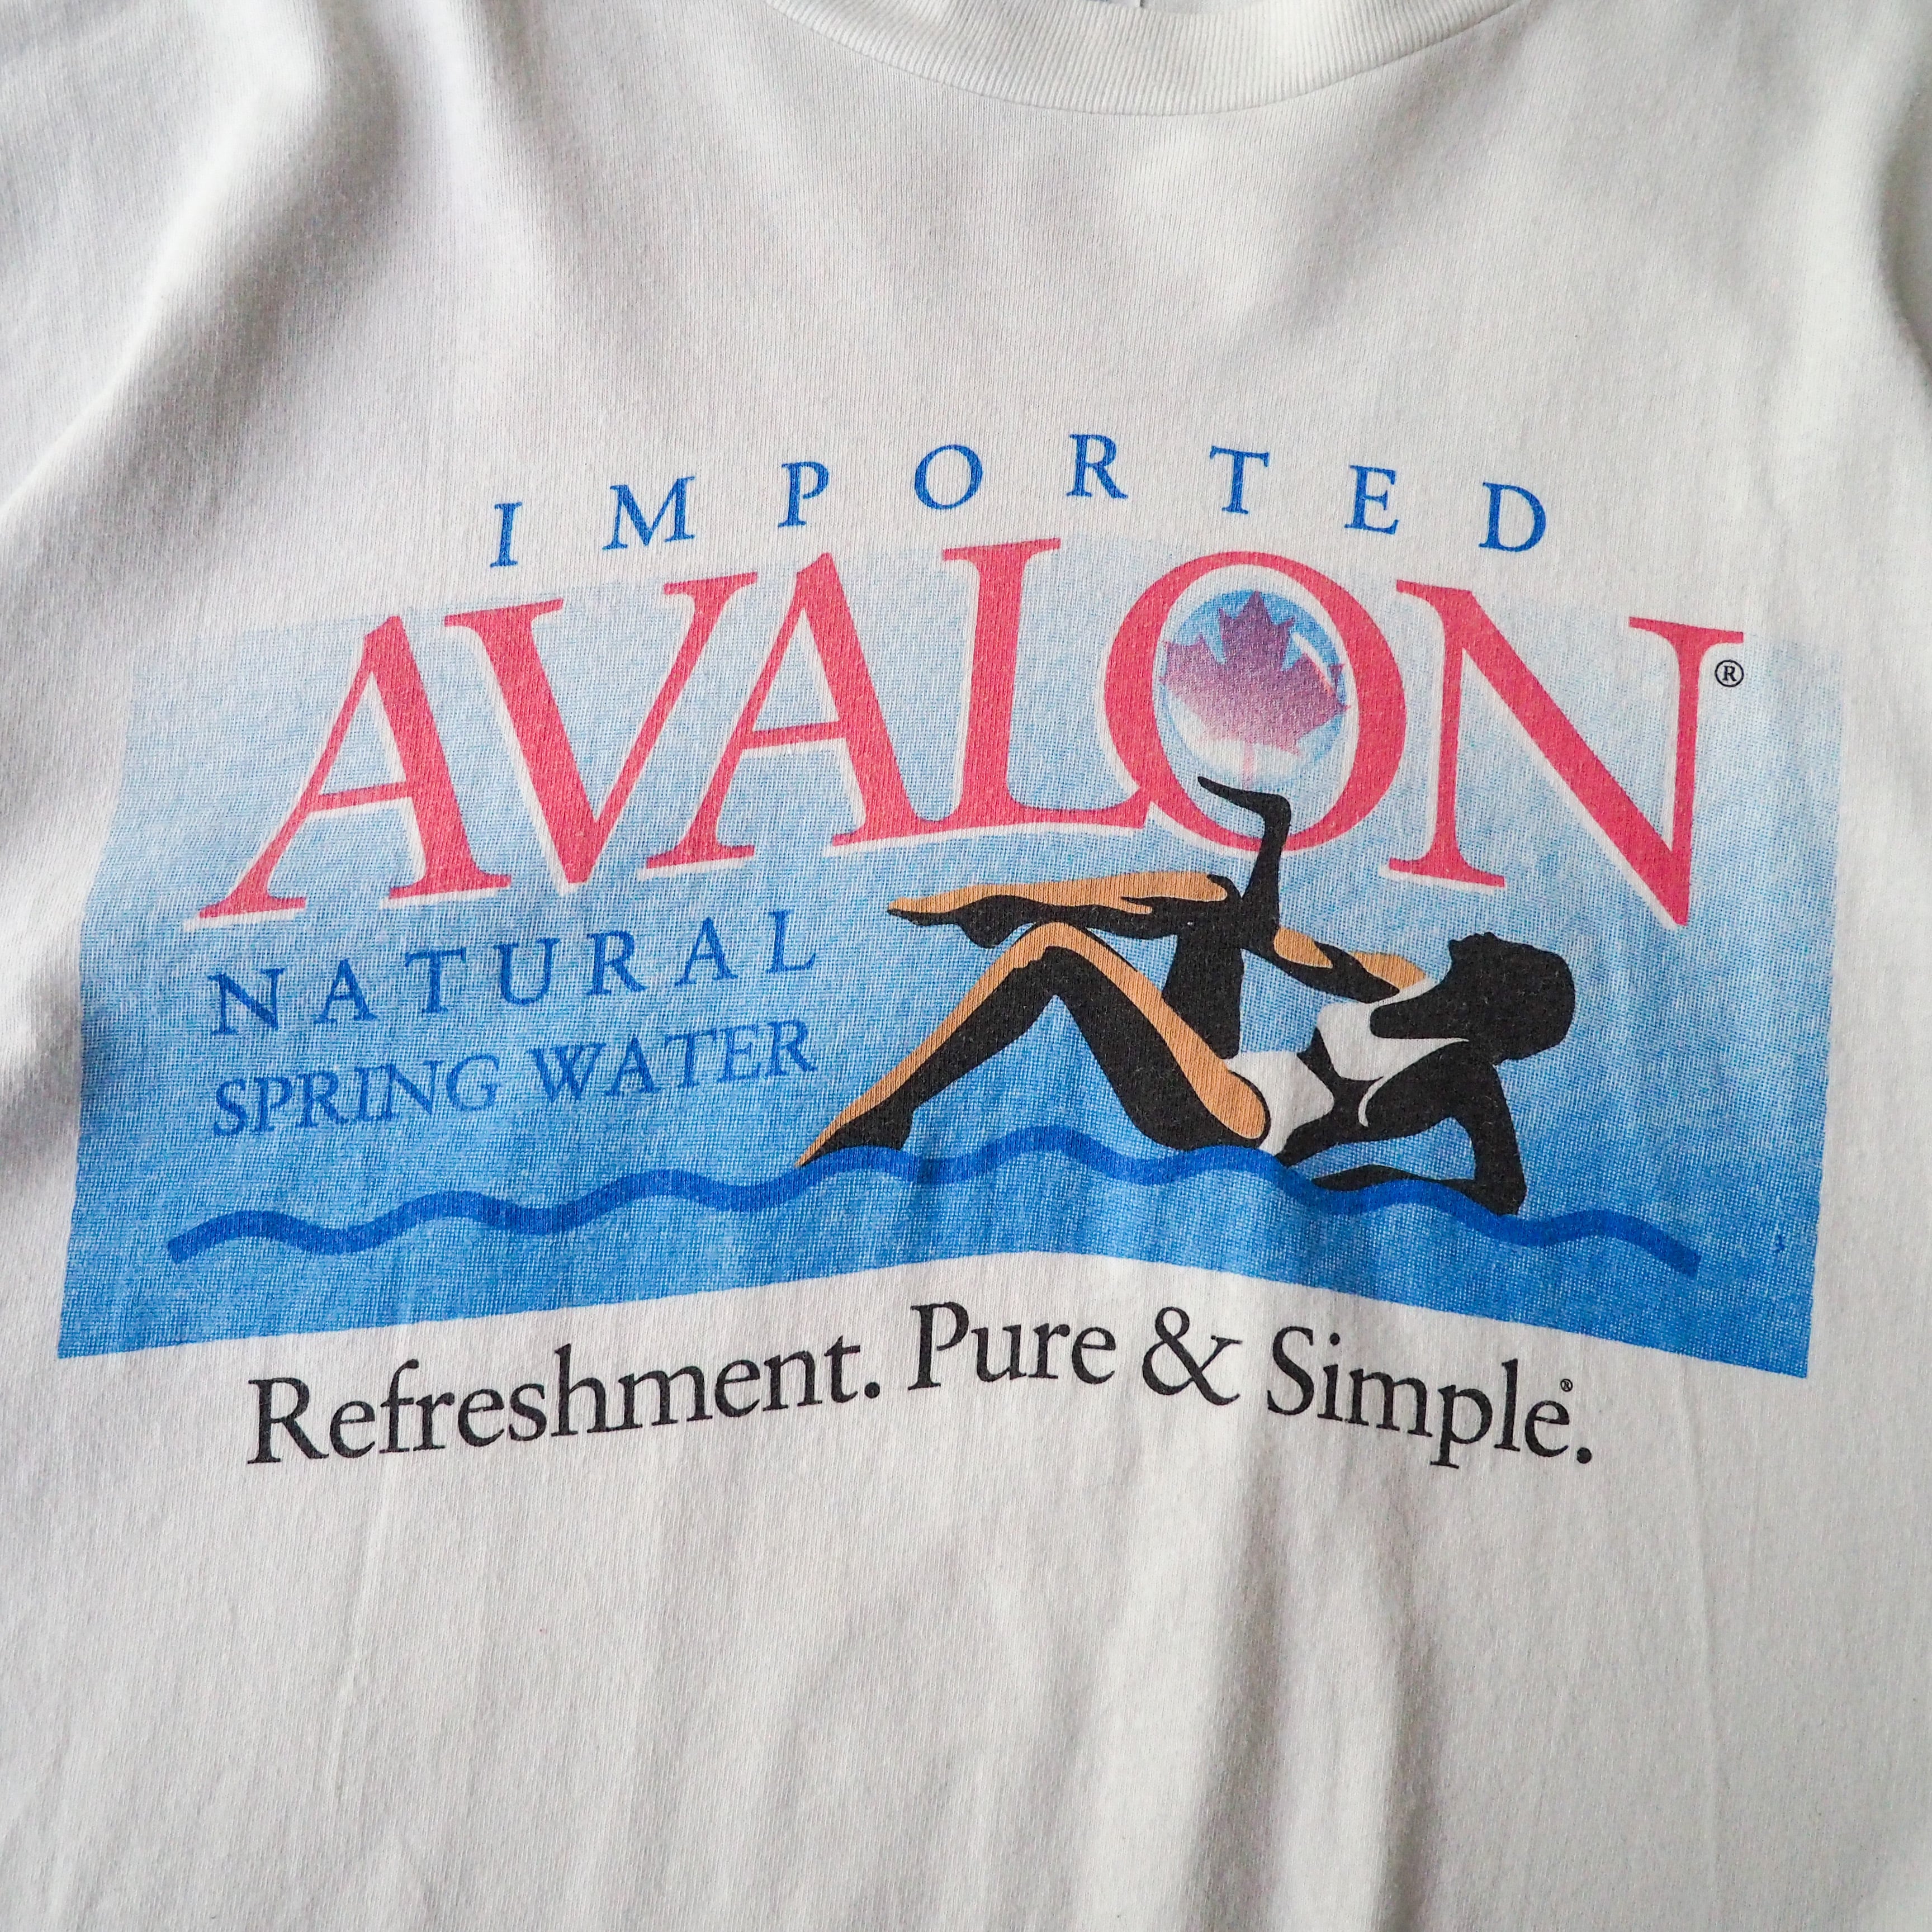 90s “AVALON” tee XL 企業系 裾ダブル袖シングルステッチ かつて存在